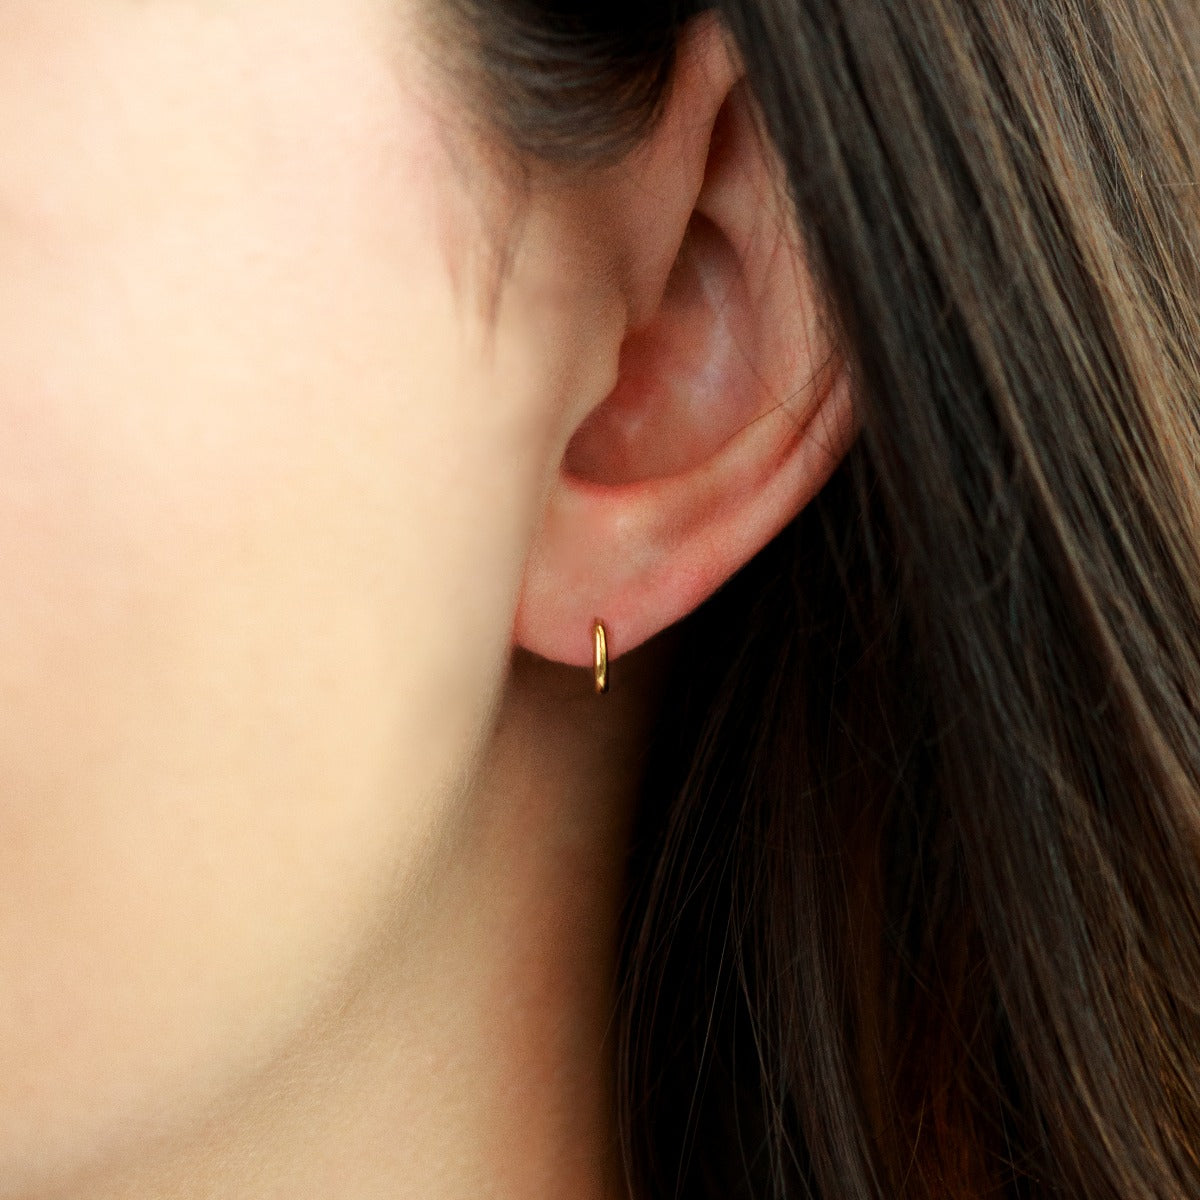 Mini boucles d’oreilles dorées dormeuses 9mm en acier inoxydable